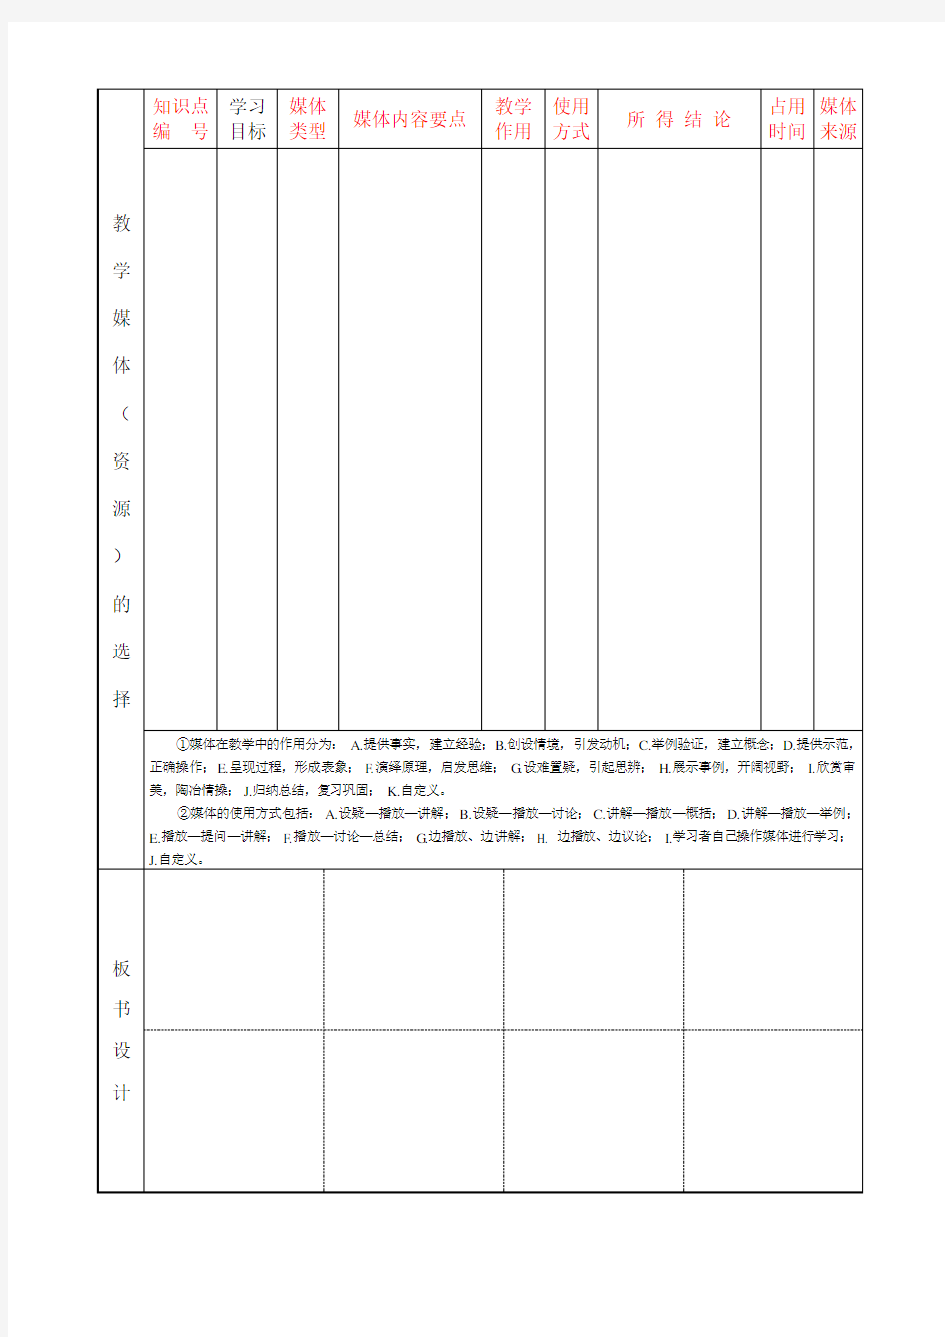 课堂教学设计表-空白模板-(教材版本)